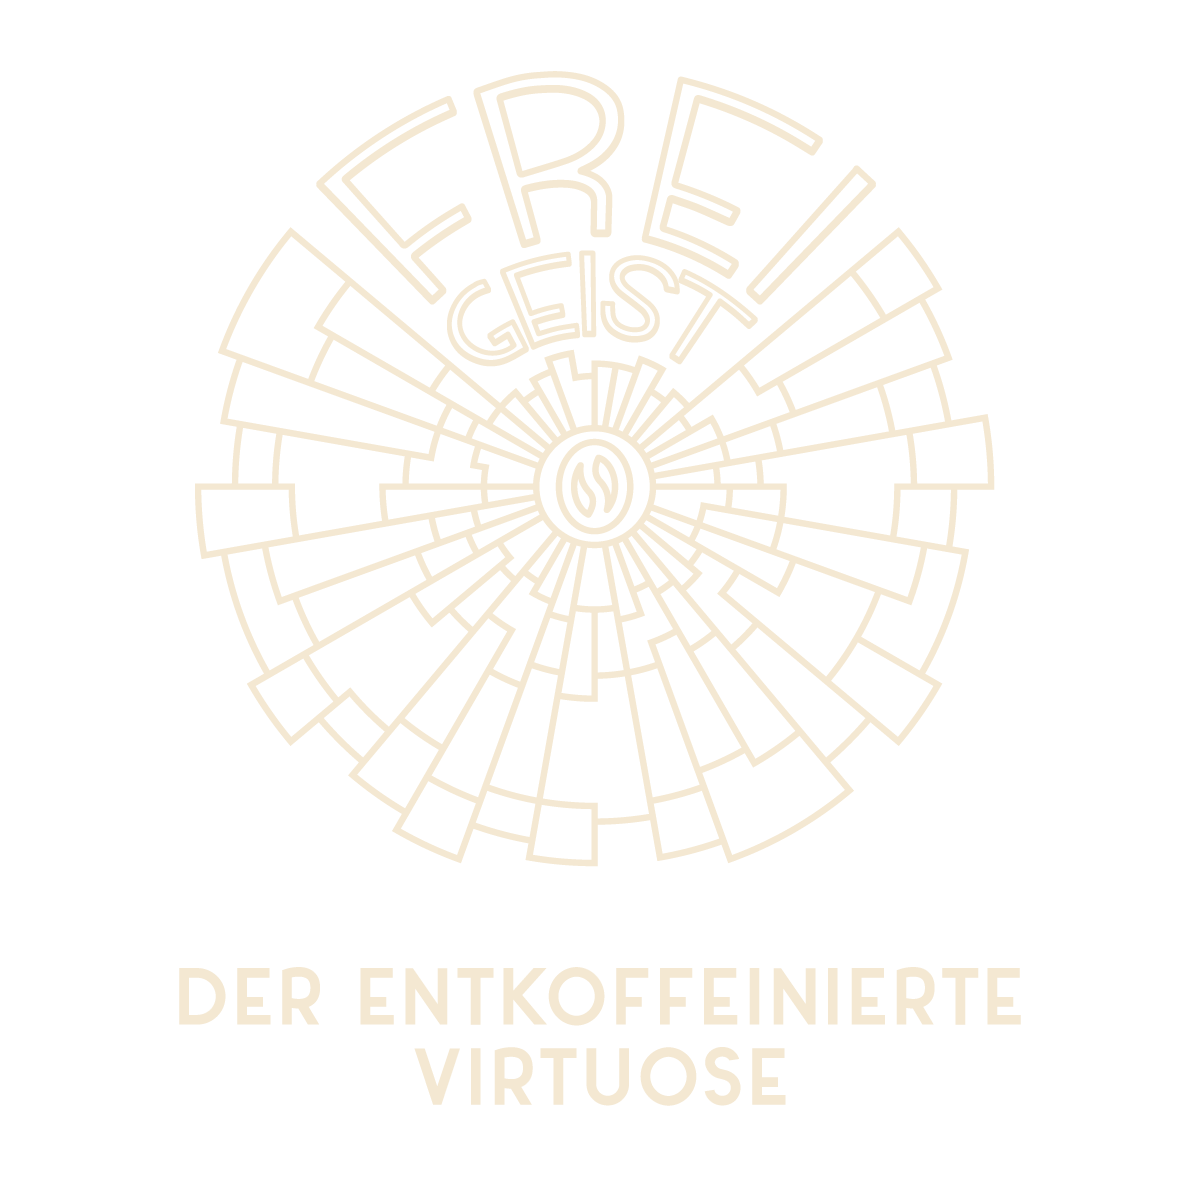 Freigeist Logo - Der Entkoffeinierte Virtuose